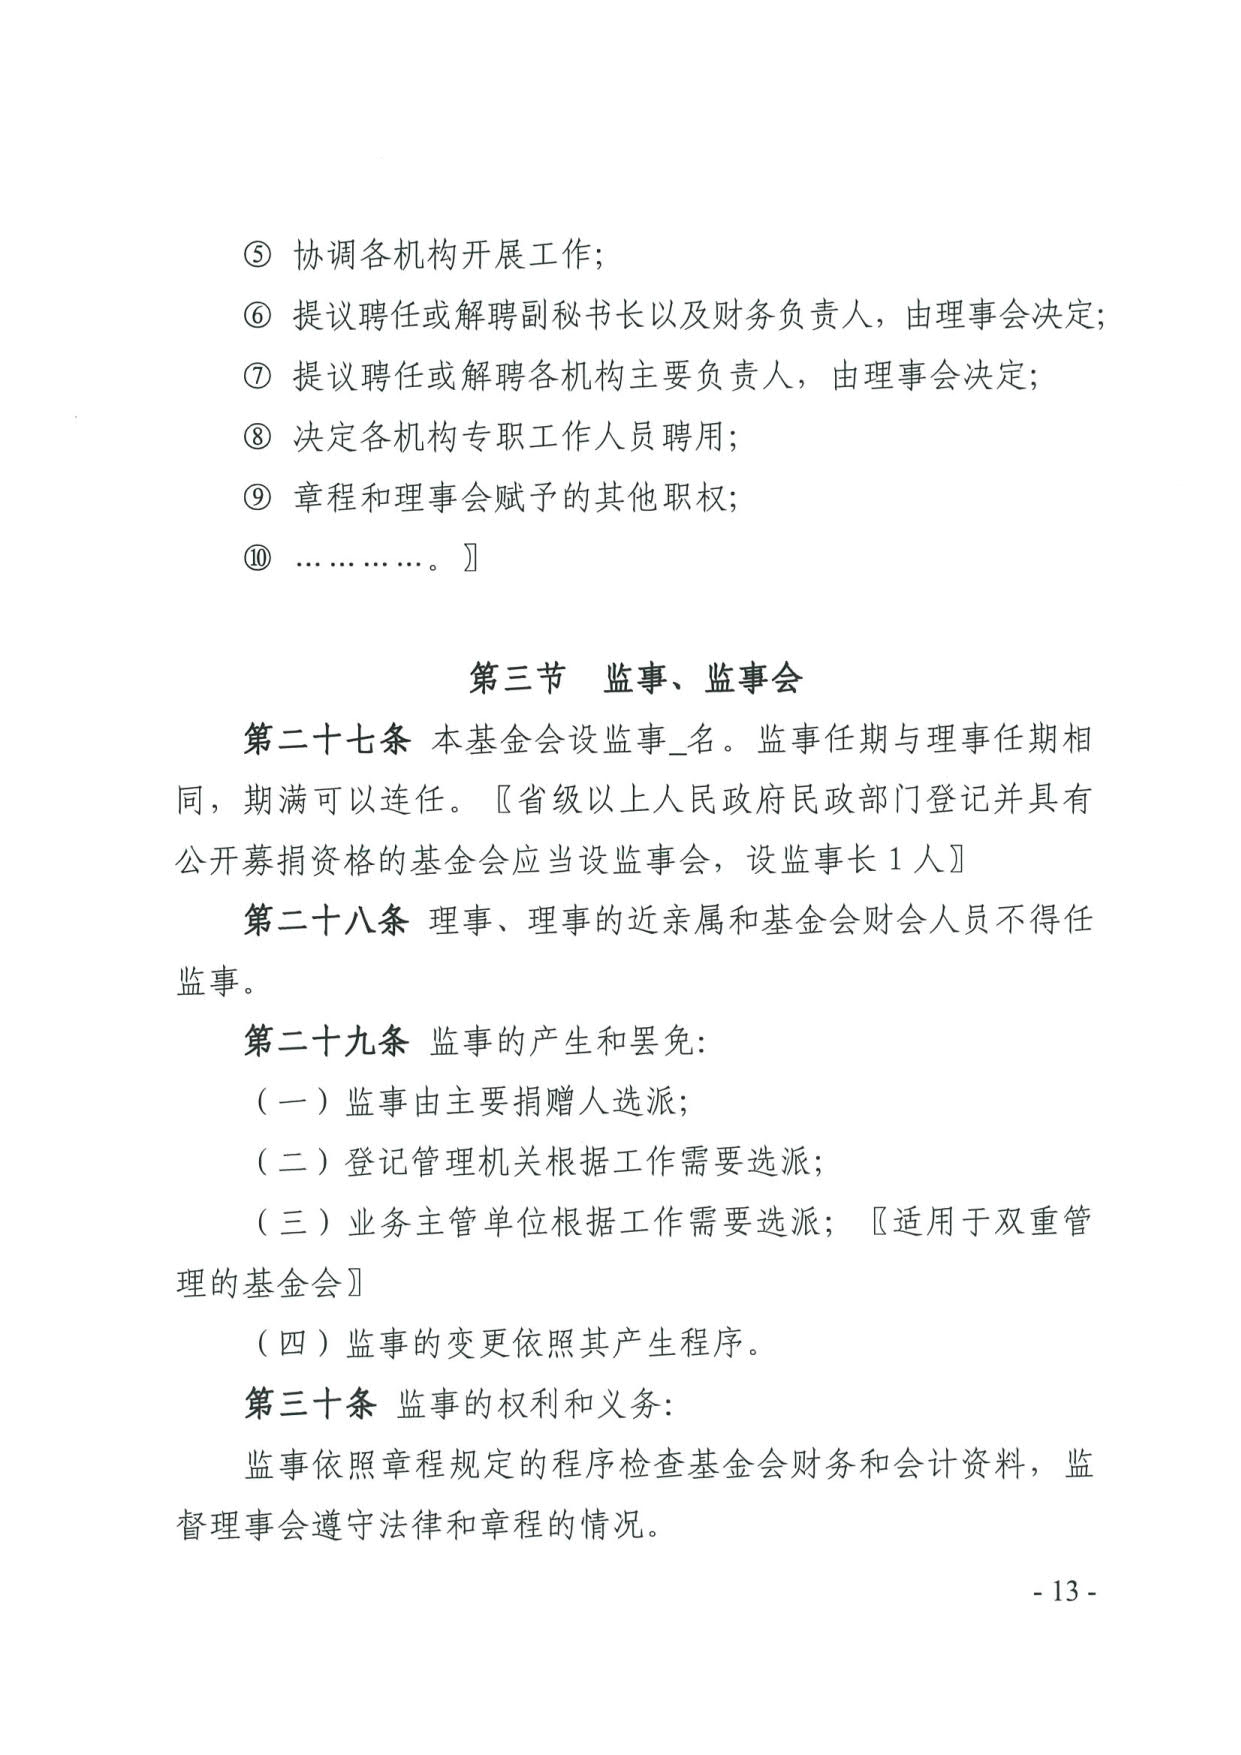 广东省民政厅关于印发《广东省基金会章程示范文本》的通知(4)_13.jpg